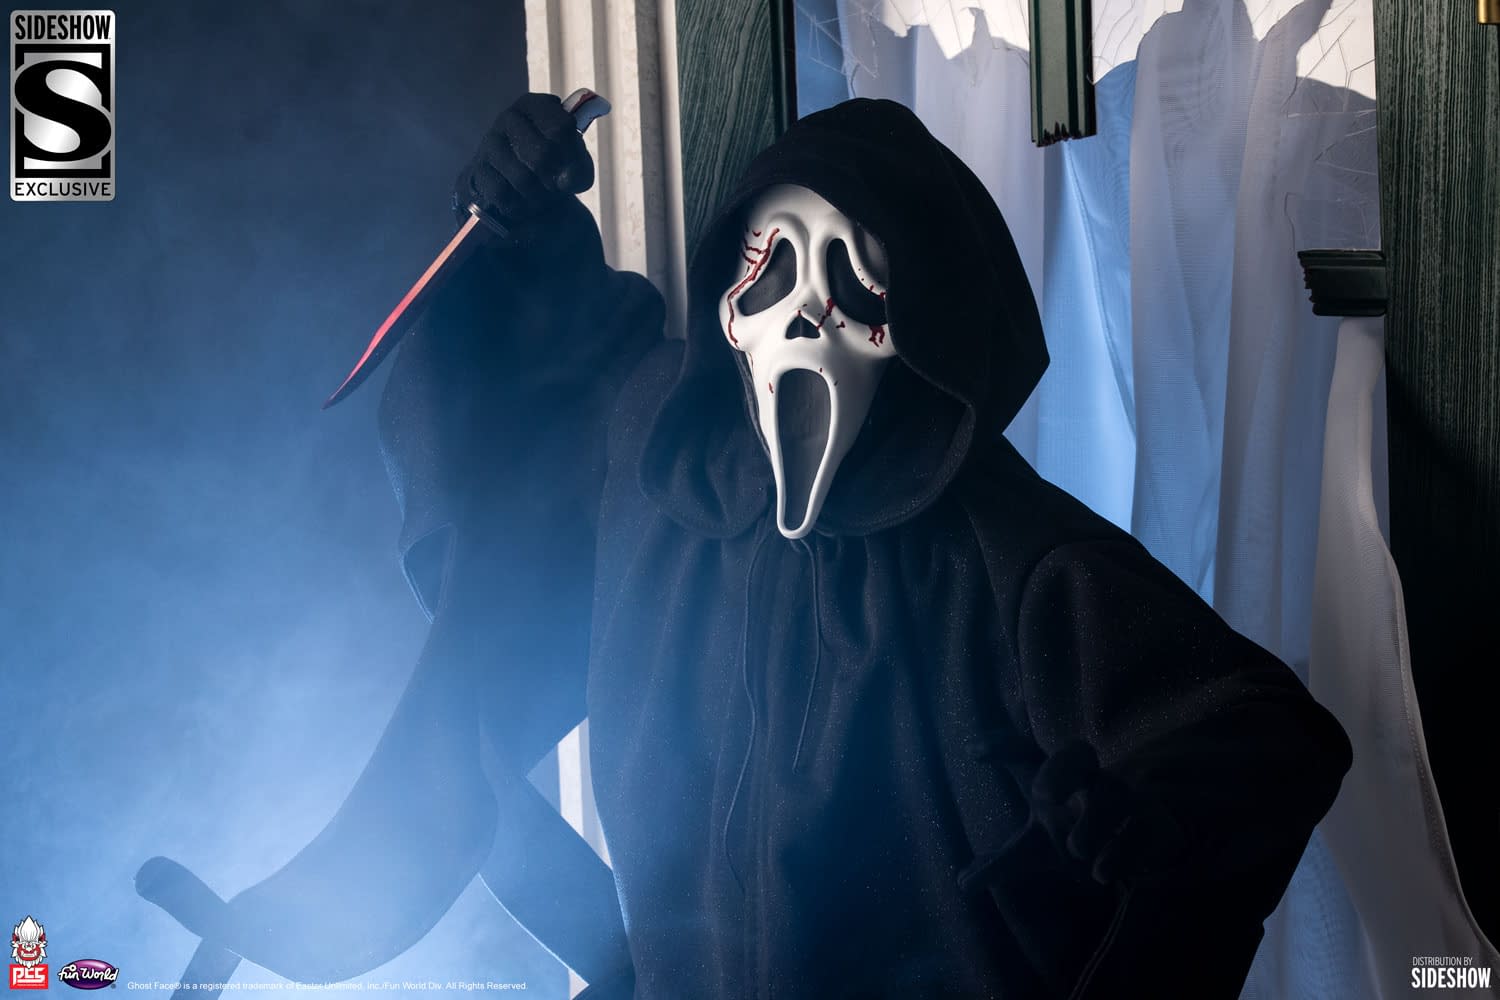 Mezco Toys Debuts 'Scream VI' Ghost Face Collectible